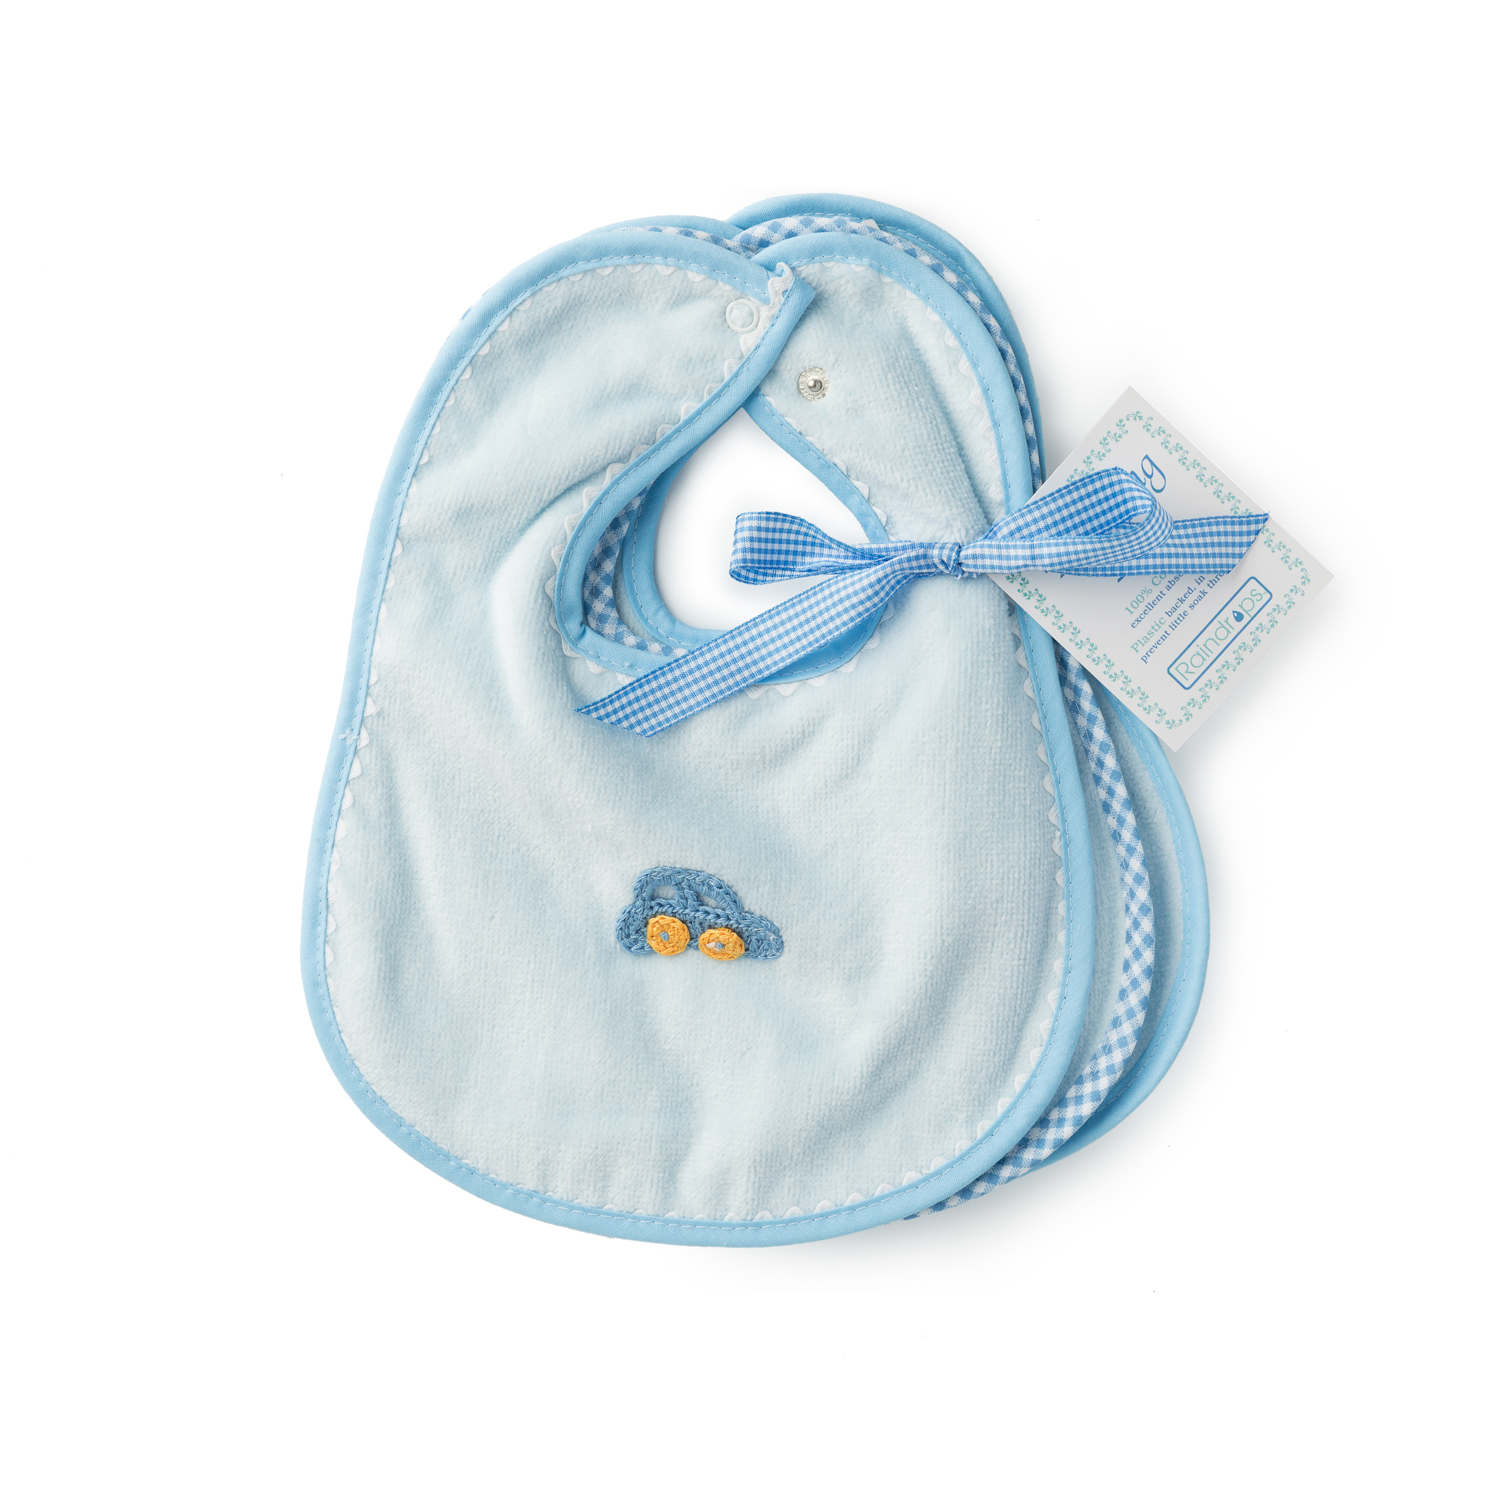 美国原产Raindrops棉质口水巾围兜婴幼儿围嘴3件套装 蓝色(含一枚汽车图案及两枚纯色围嘴)